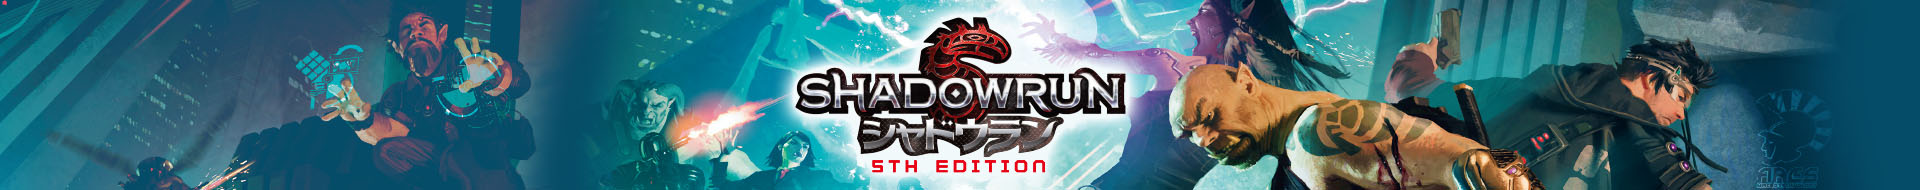 CDJapan : Shadowrun 5th Edition Shadowrun Codex (Role & Roll RPG